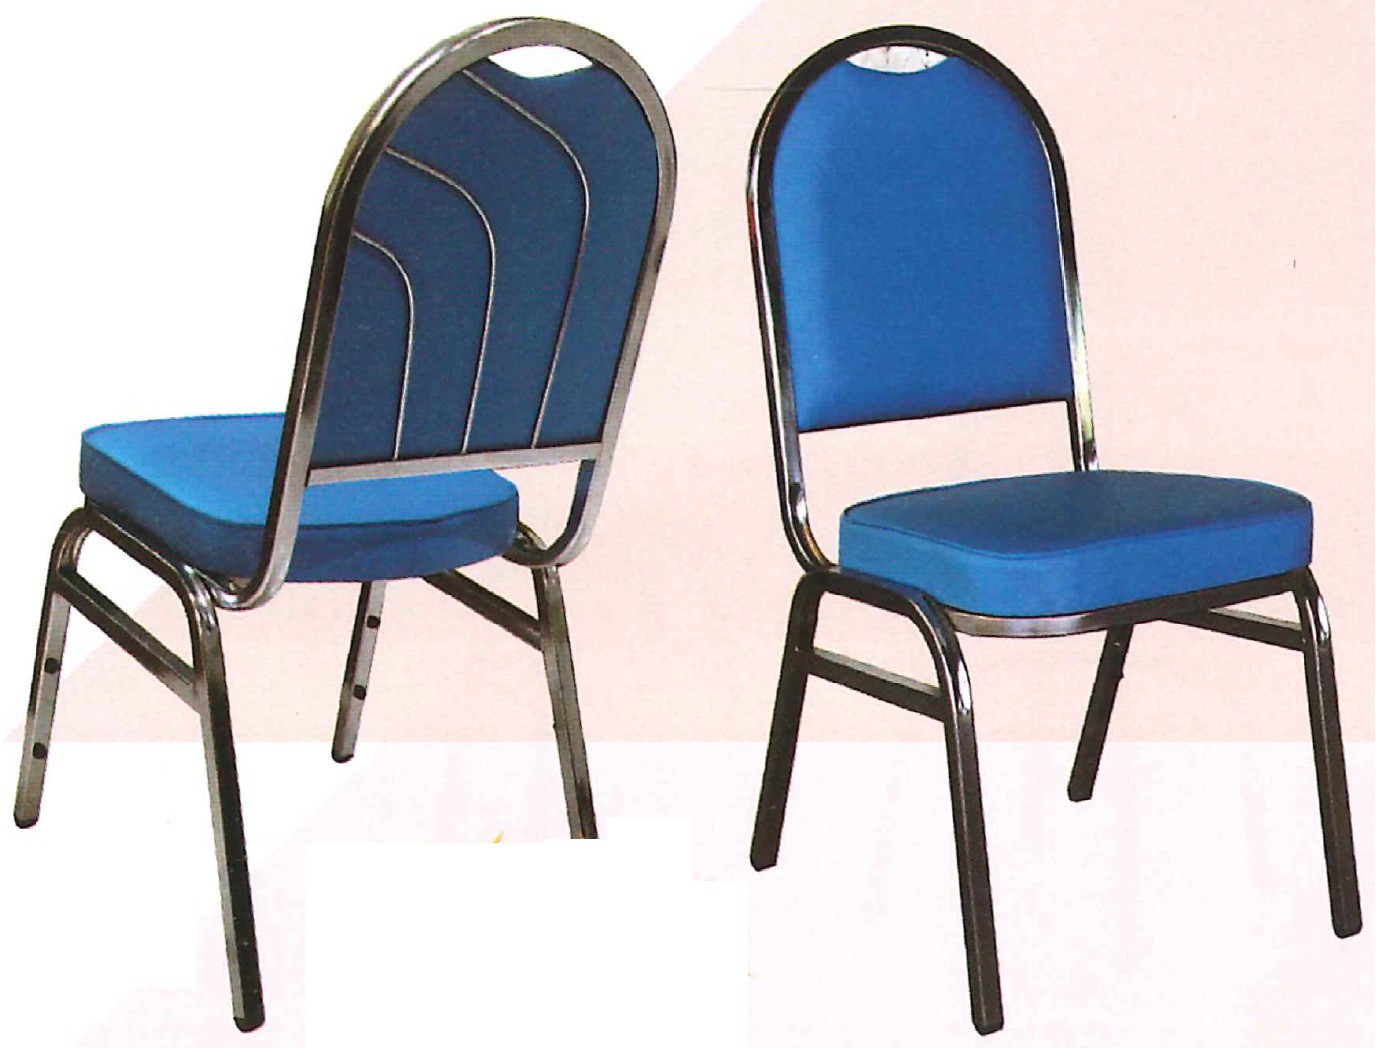 DG/DG7300A,เก้าอี้จัดเลี้ยงพนักพิงทรงโค้ง,เก้าอี้จัดเลี้ยง,เก้าอี้พนักพิง,เก้าอี้เบาะพิง,เก้าอี้โค้ง,เก้าอี้,chair